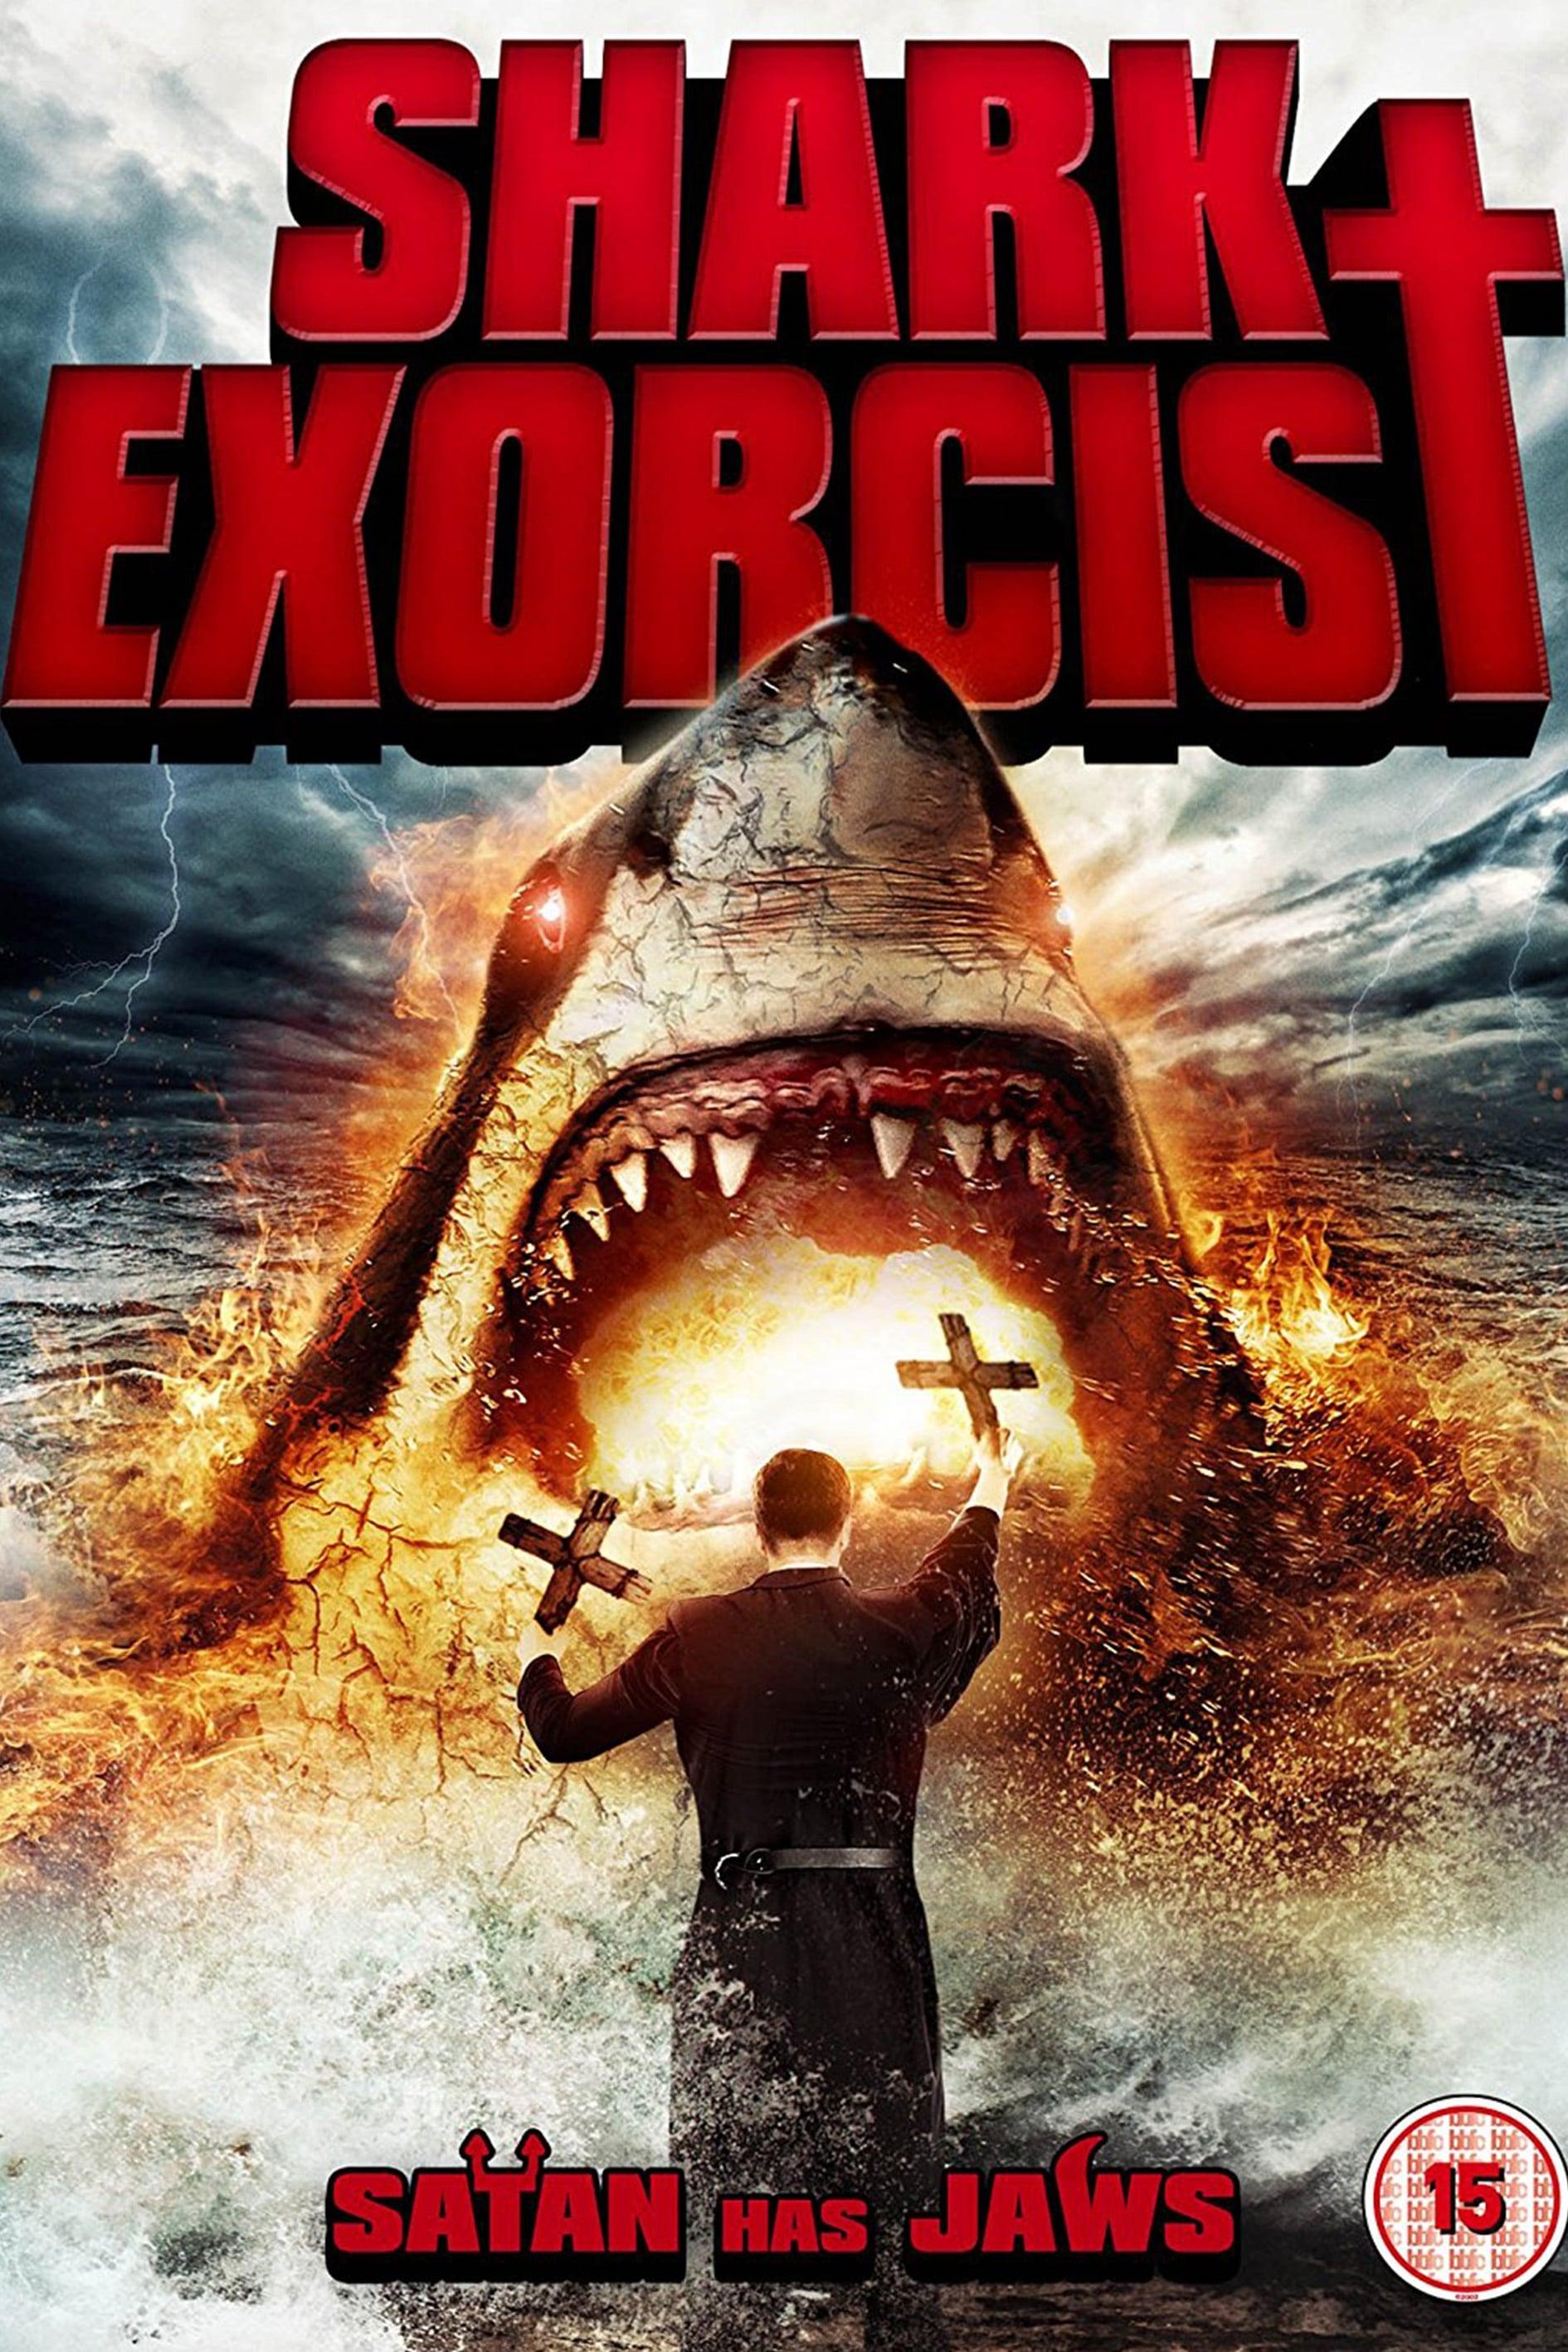 Shark Exorcist poster